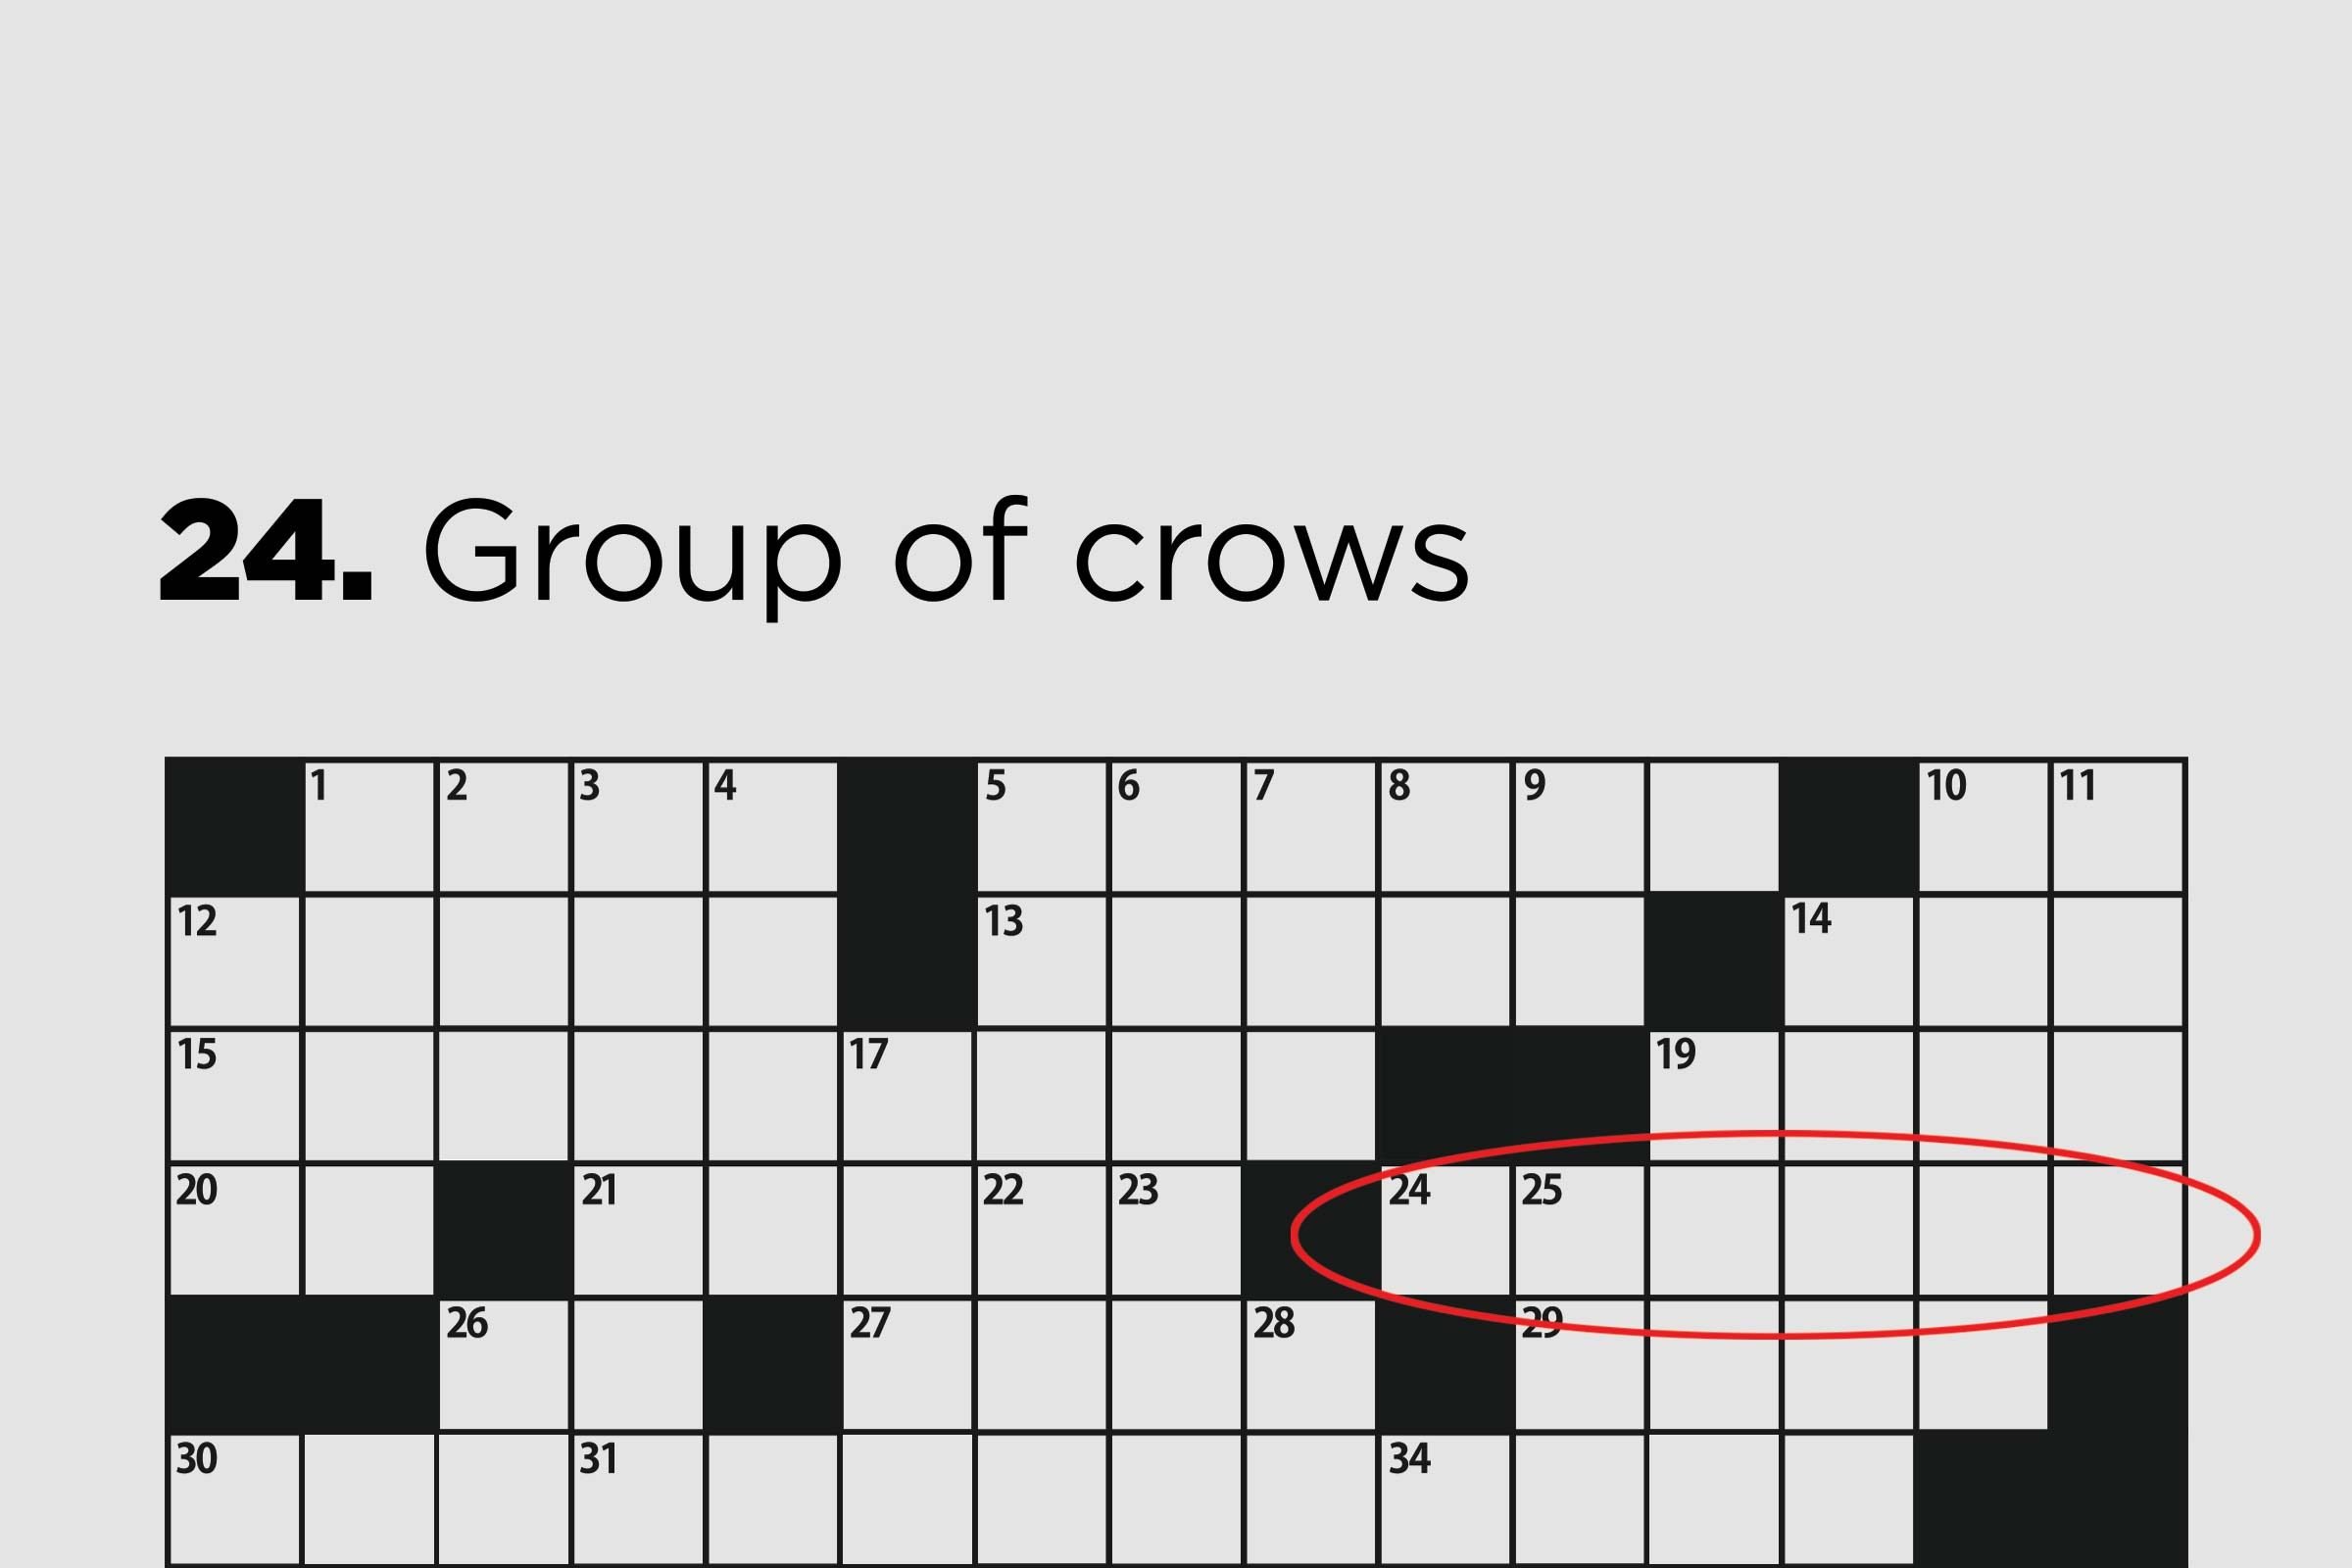 bogey crossword clue